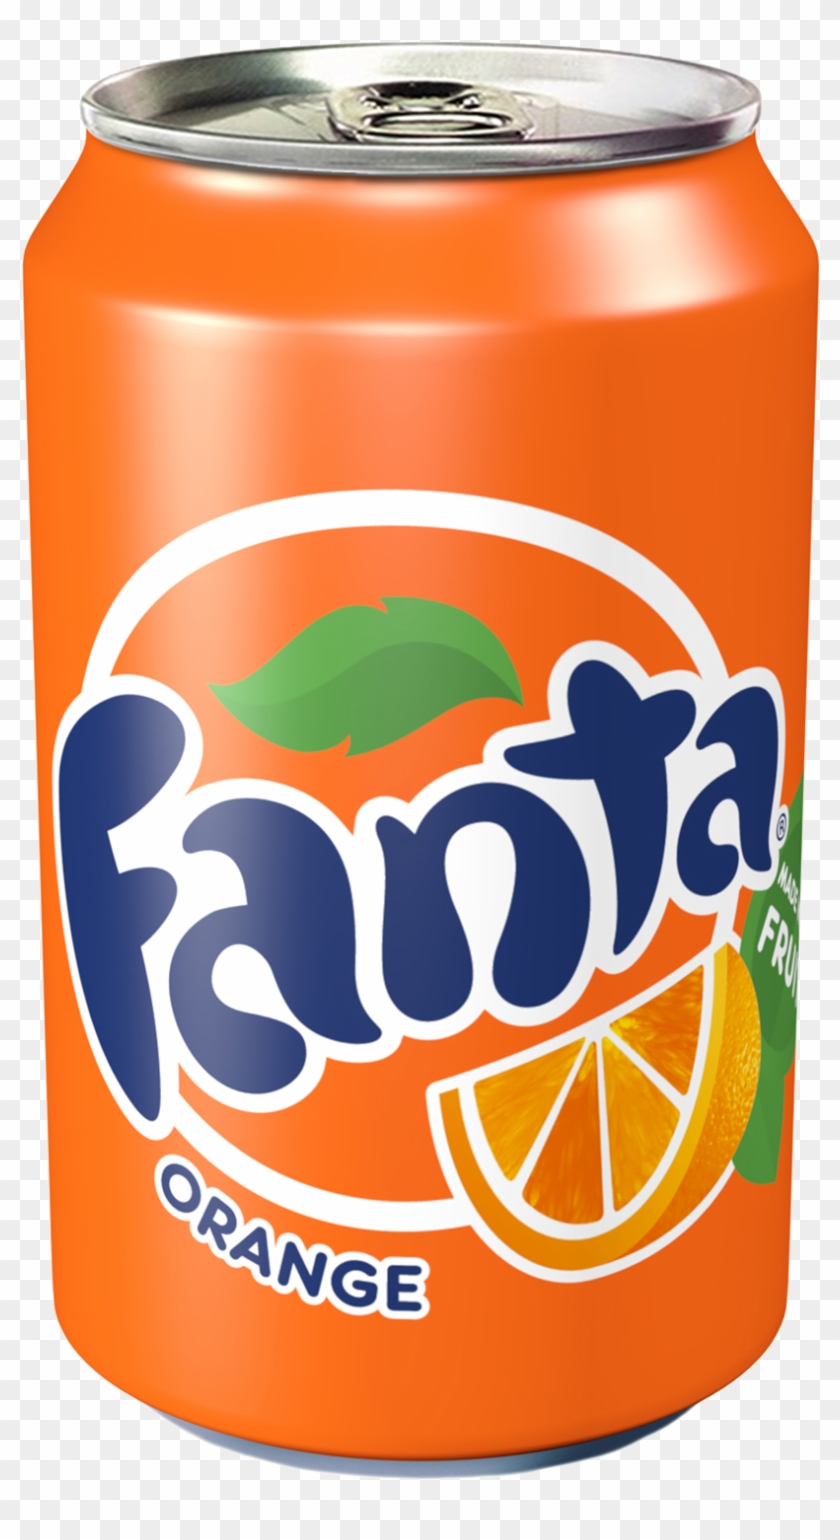 Coca Cola Clipart 330ml Png - Drink Fanta #1655828